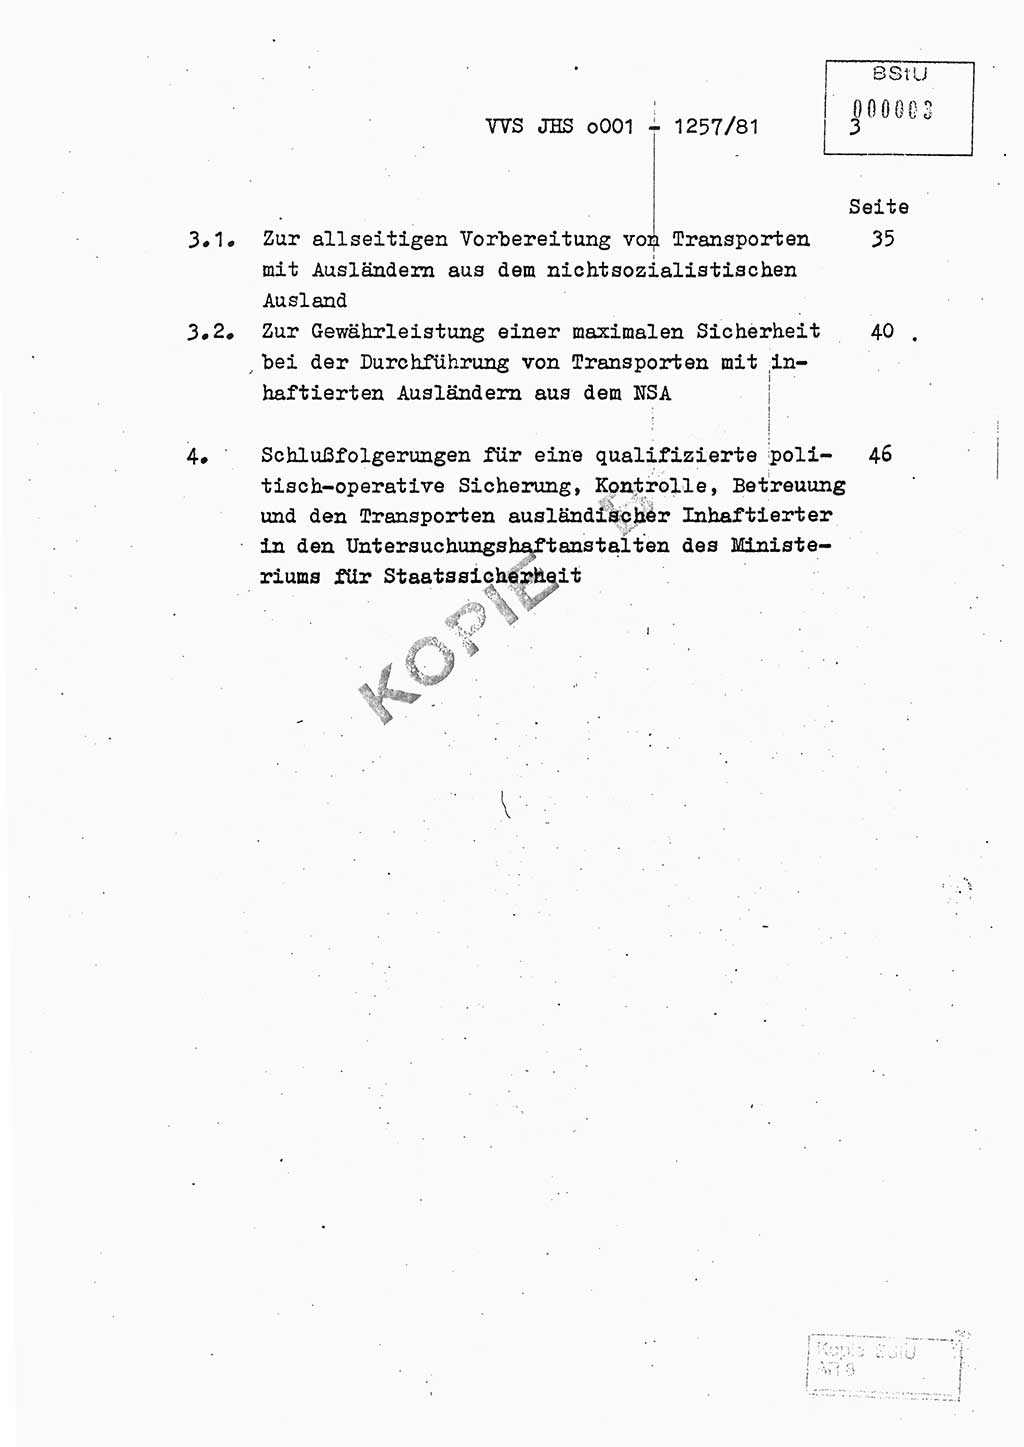 Fachschulabschlußarbeit Unterleutnant Dieter Möller (BV Rst. Abt. ⅩⅣ), Ministerium für Staatssicherheit (MfS) [Deutsche Demokratische Republik (DDR)], Juristische Hochschule (JHS), Vertrauliche Verschlußsache (VVS) o001-1257/81, Potsdam 1982, Seite 3 (FS-Abschl.-Arb. MfS DDR JHS VVS o001-1257/81 1982, S. 3)